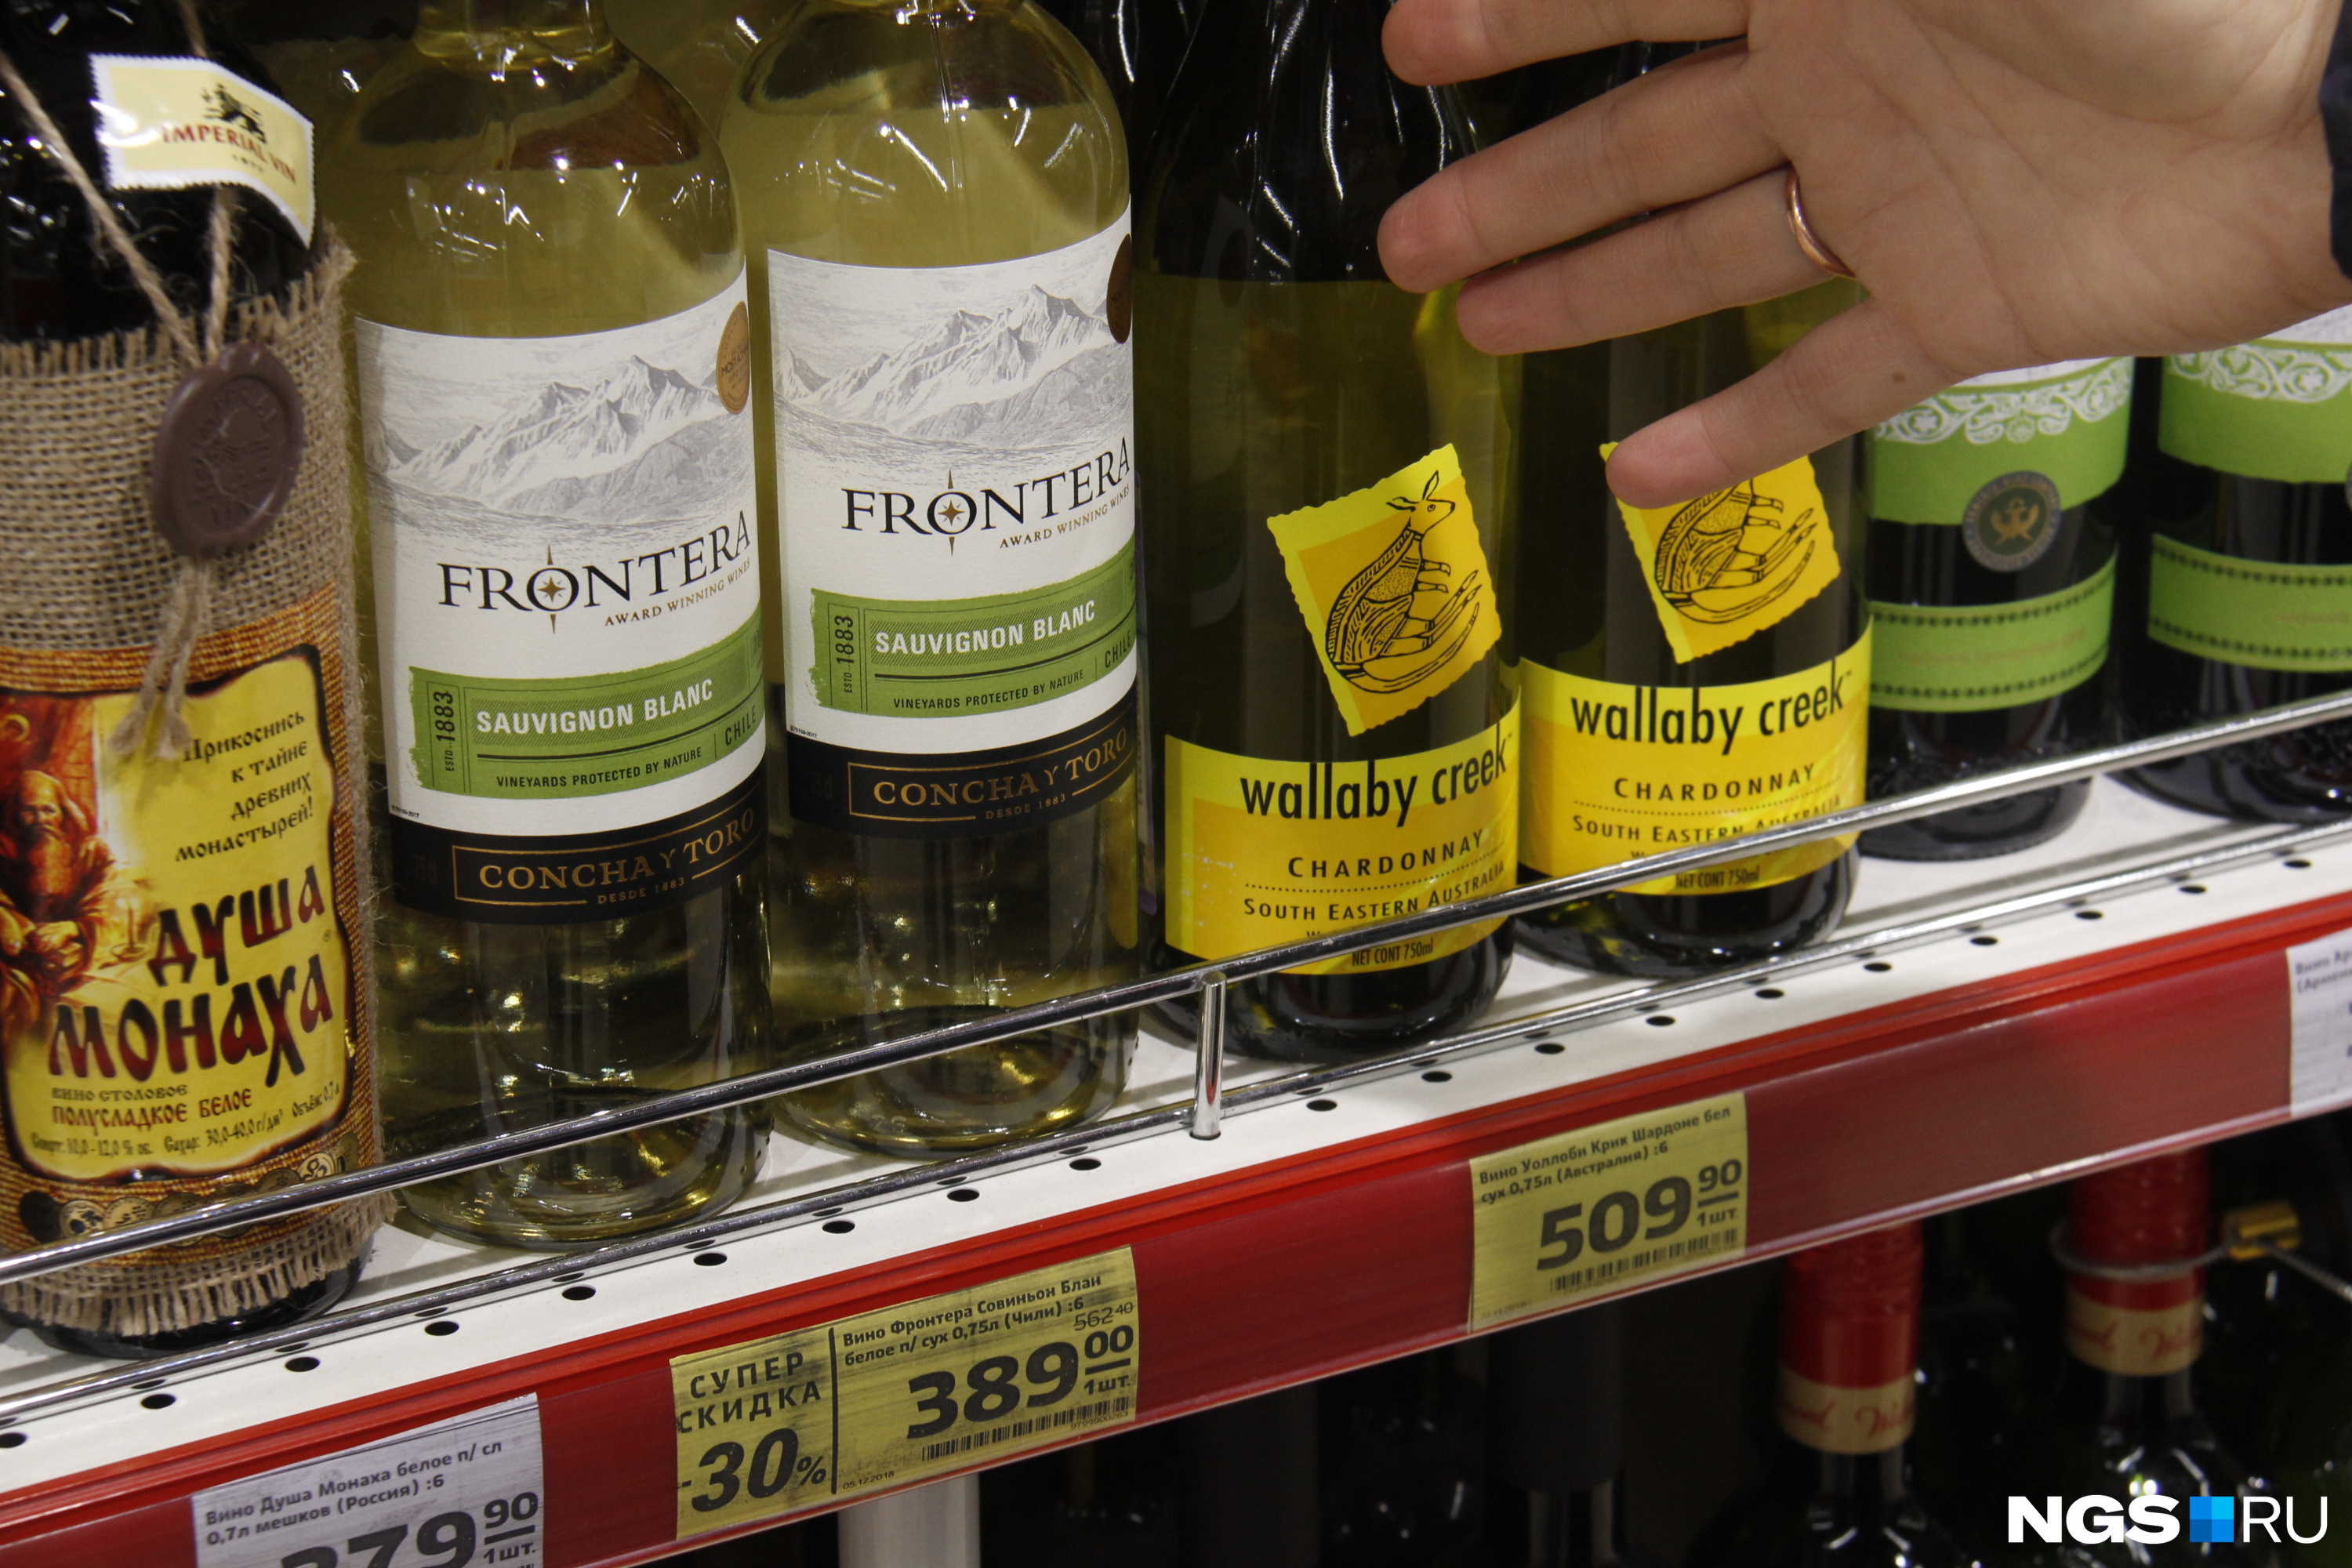 Цена со скидкой в некоторых случаях приближается к цене вина на родине